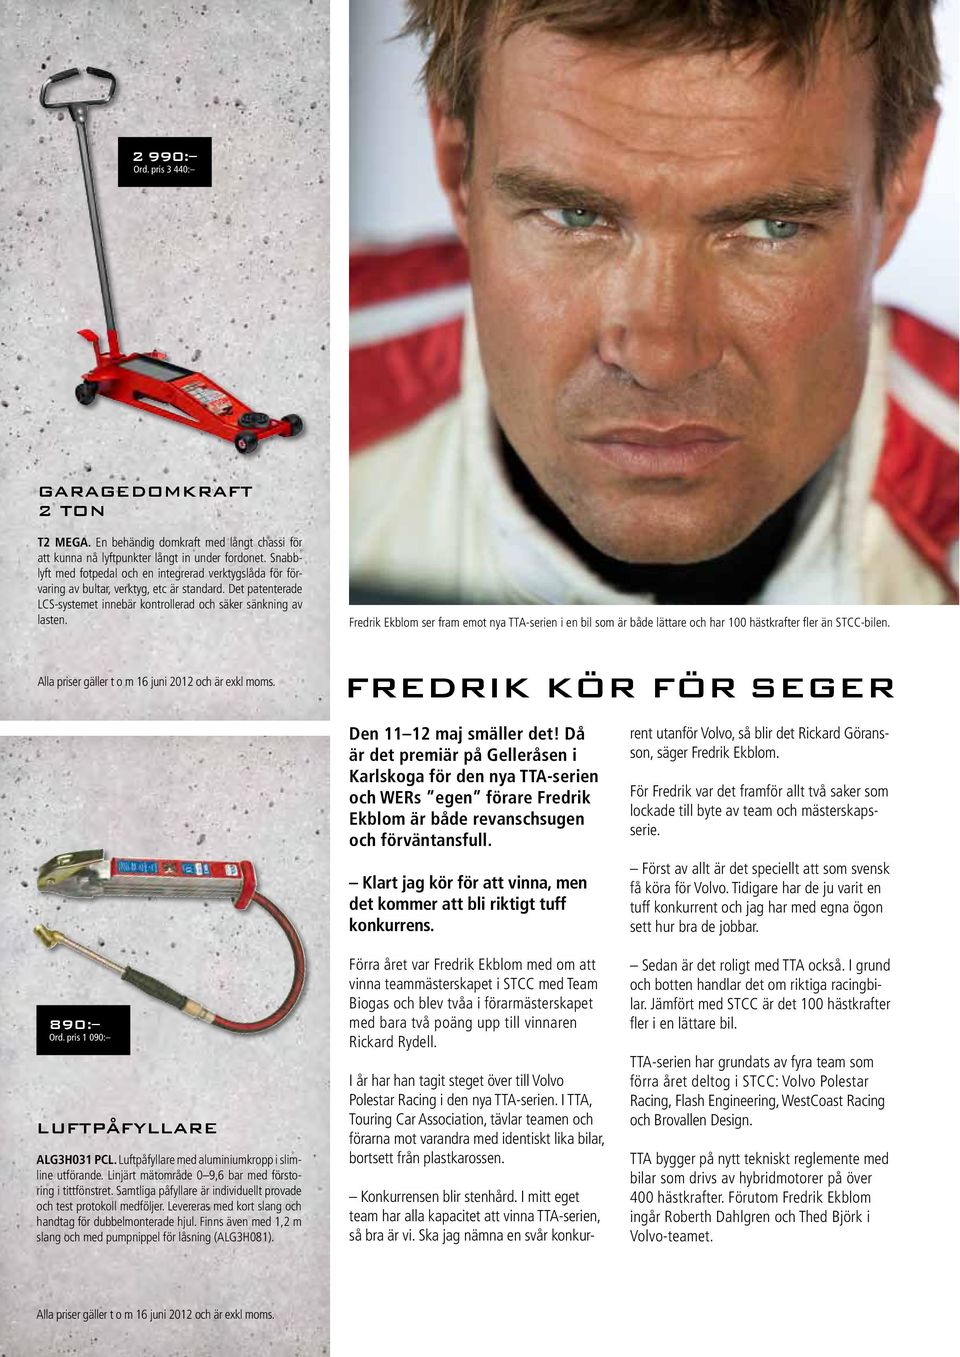 Fredrik Ekblom ser fram emot nya TTA-serien i en bil som är både lättare och har 100 hästkrafter fler än STCC-bilen. Alla priser gäller t o m 16 juni 2012 och är exkl moms.